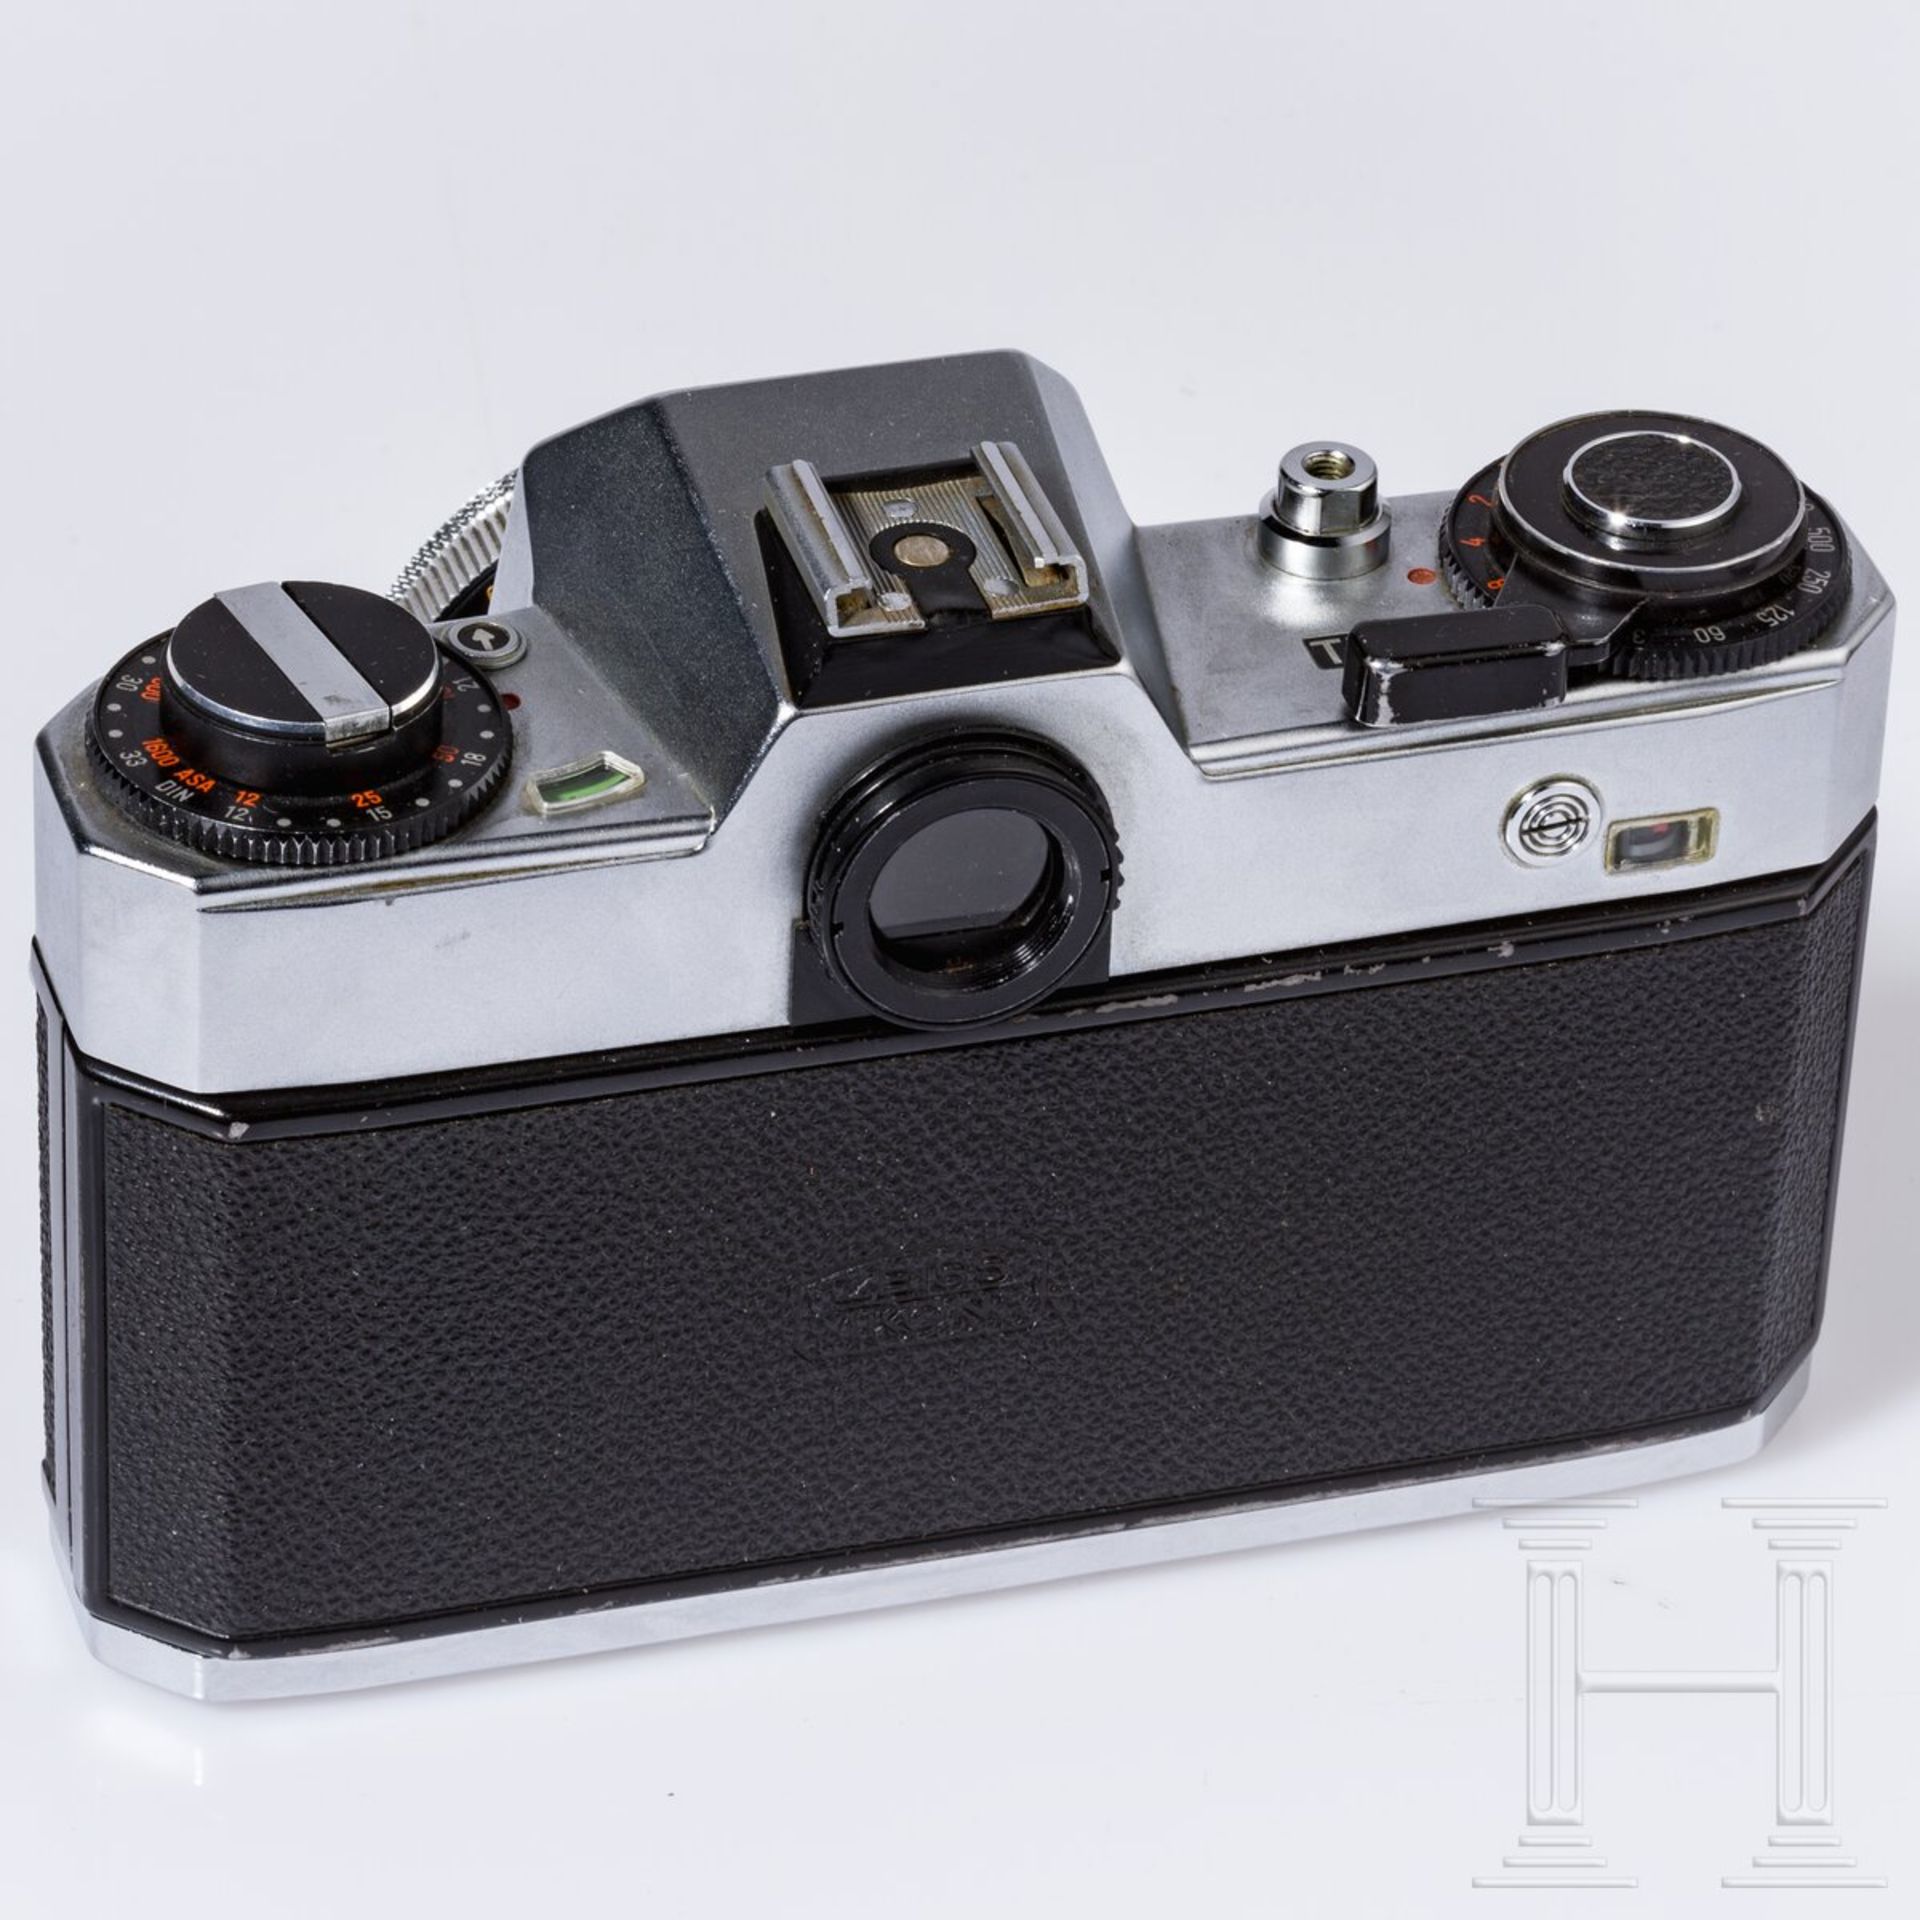 Zeiss Ikon SL 706 mit Carl Zeiss Tessar 50 mm, Skoparex 35 mm, Super-Dynarex 135 mm - Bild 3 aus 11